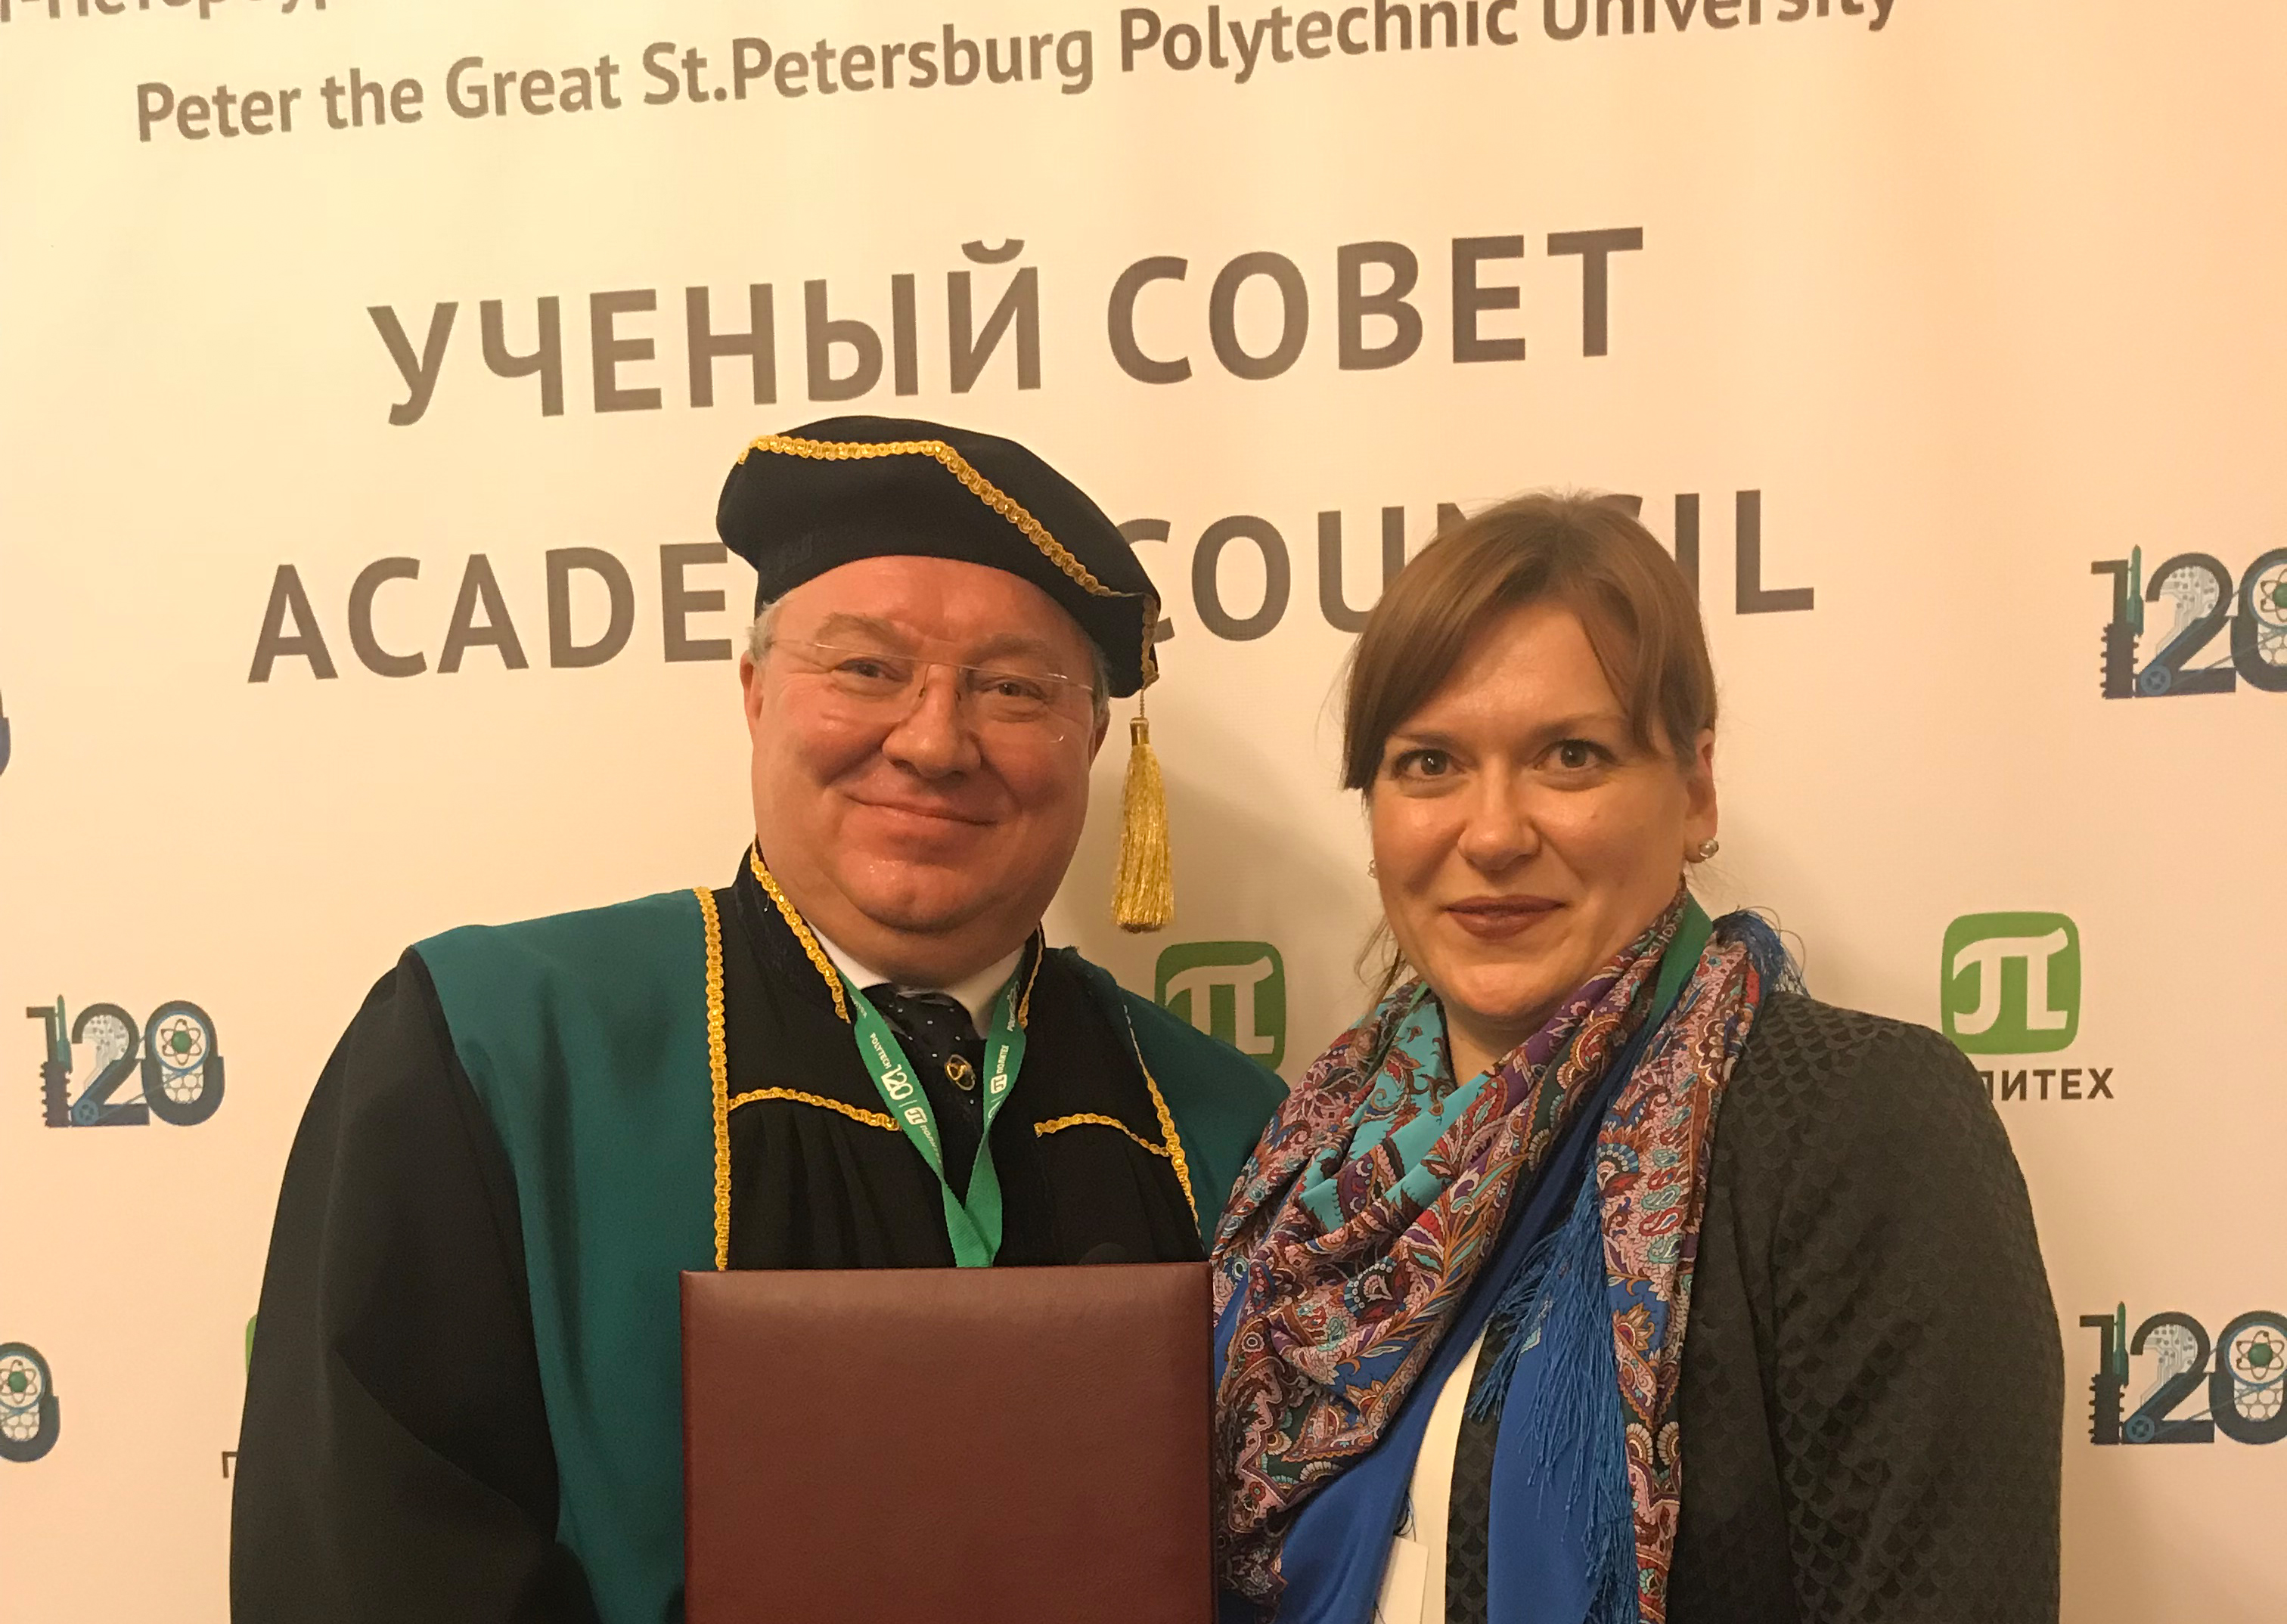 Представительство DFG (Вильма Ретхаге) поздравляет ректора Андрея Рудского с 120-летием университета